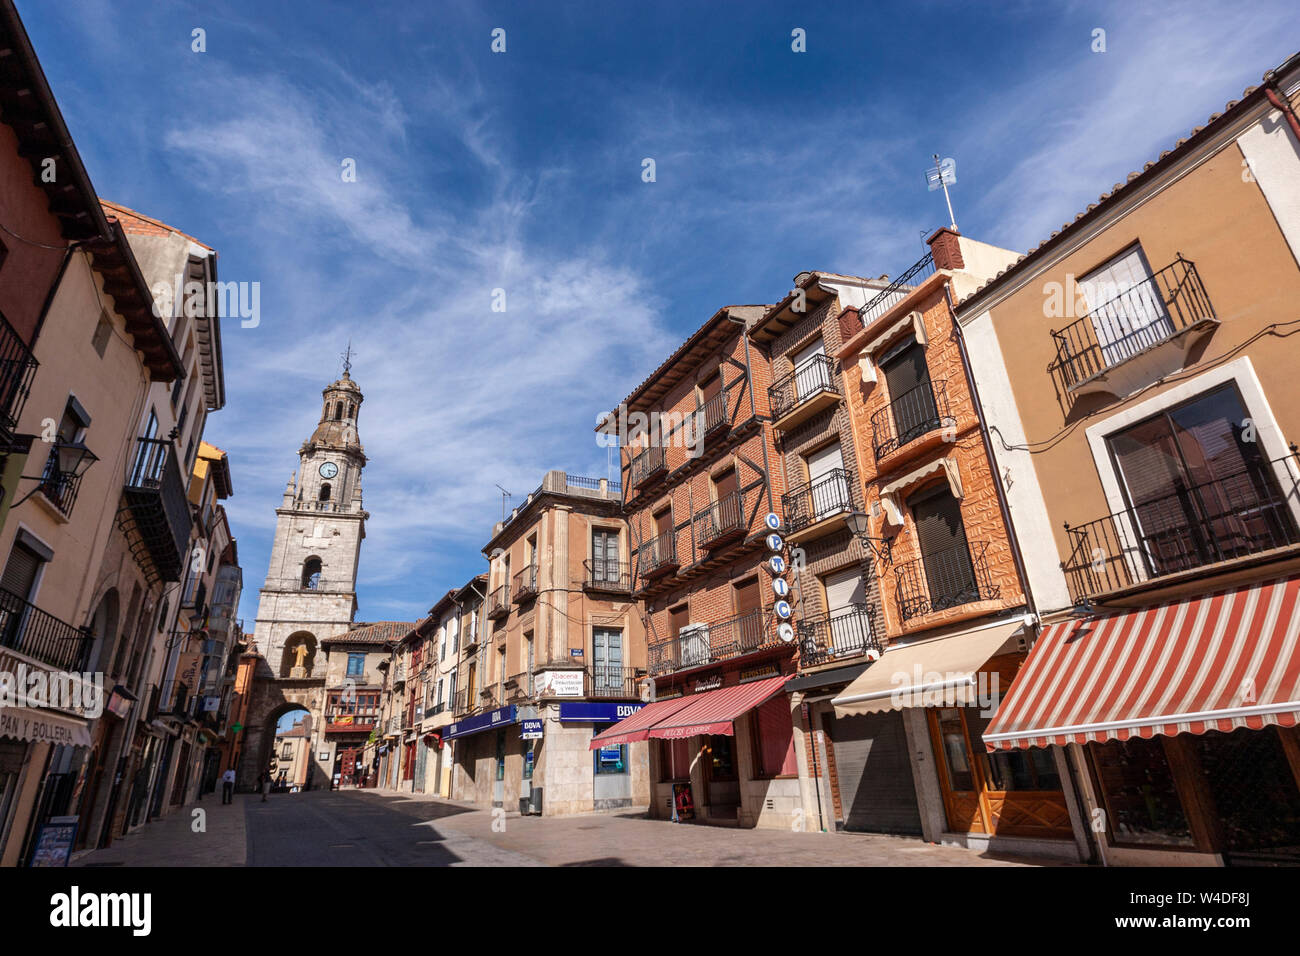 Puerta del Mercado in Toro with the Torre del Reloj at background. Toro, Zamora province, Castile, Spain Stock Photo